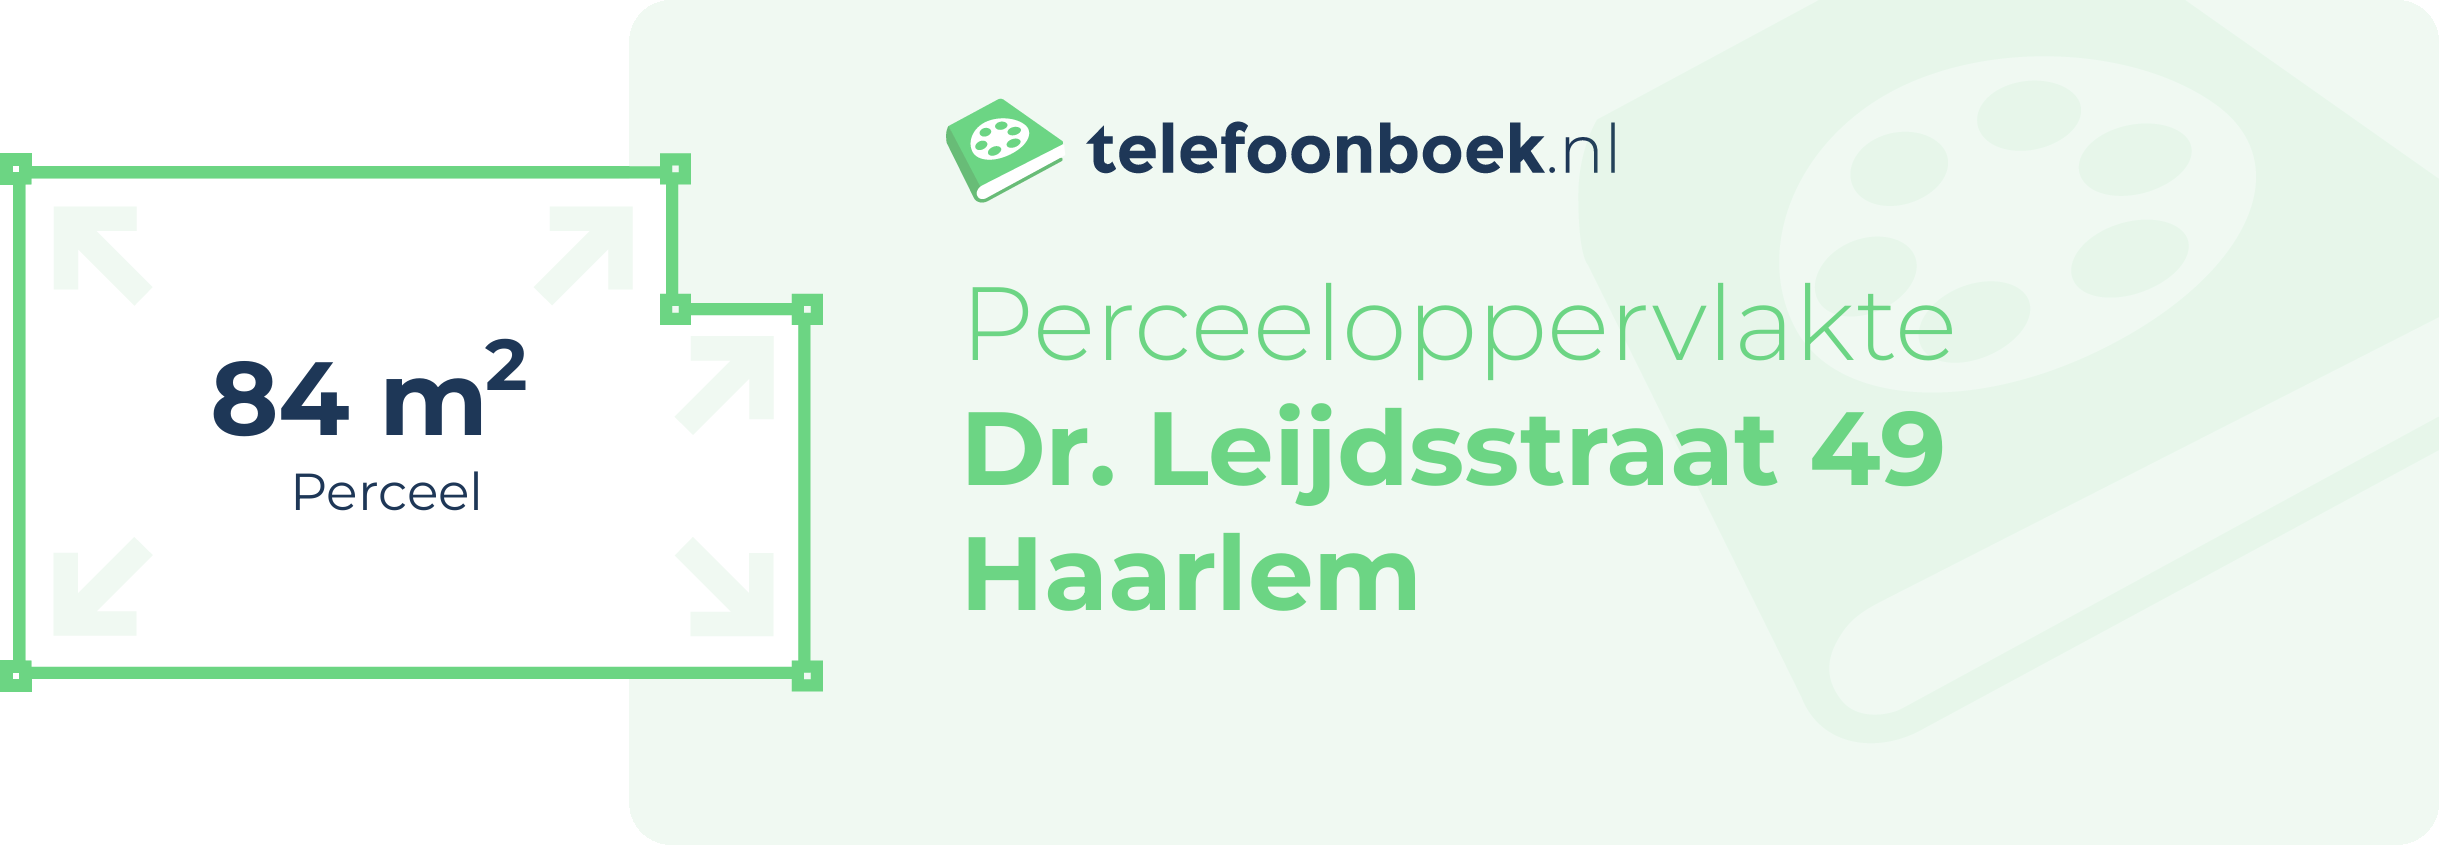 Perceeloppervlakte Dr. Leijdsstraat 49 Haarlem